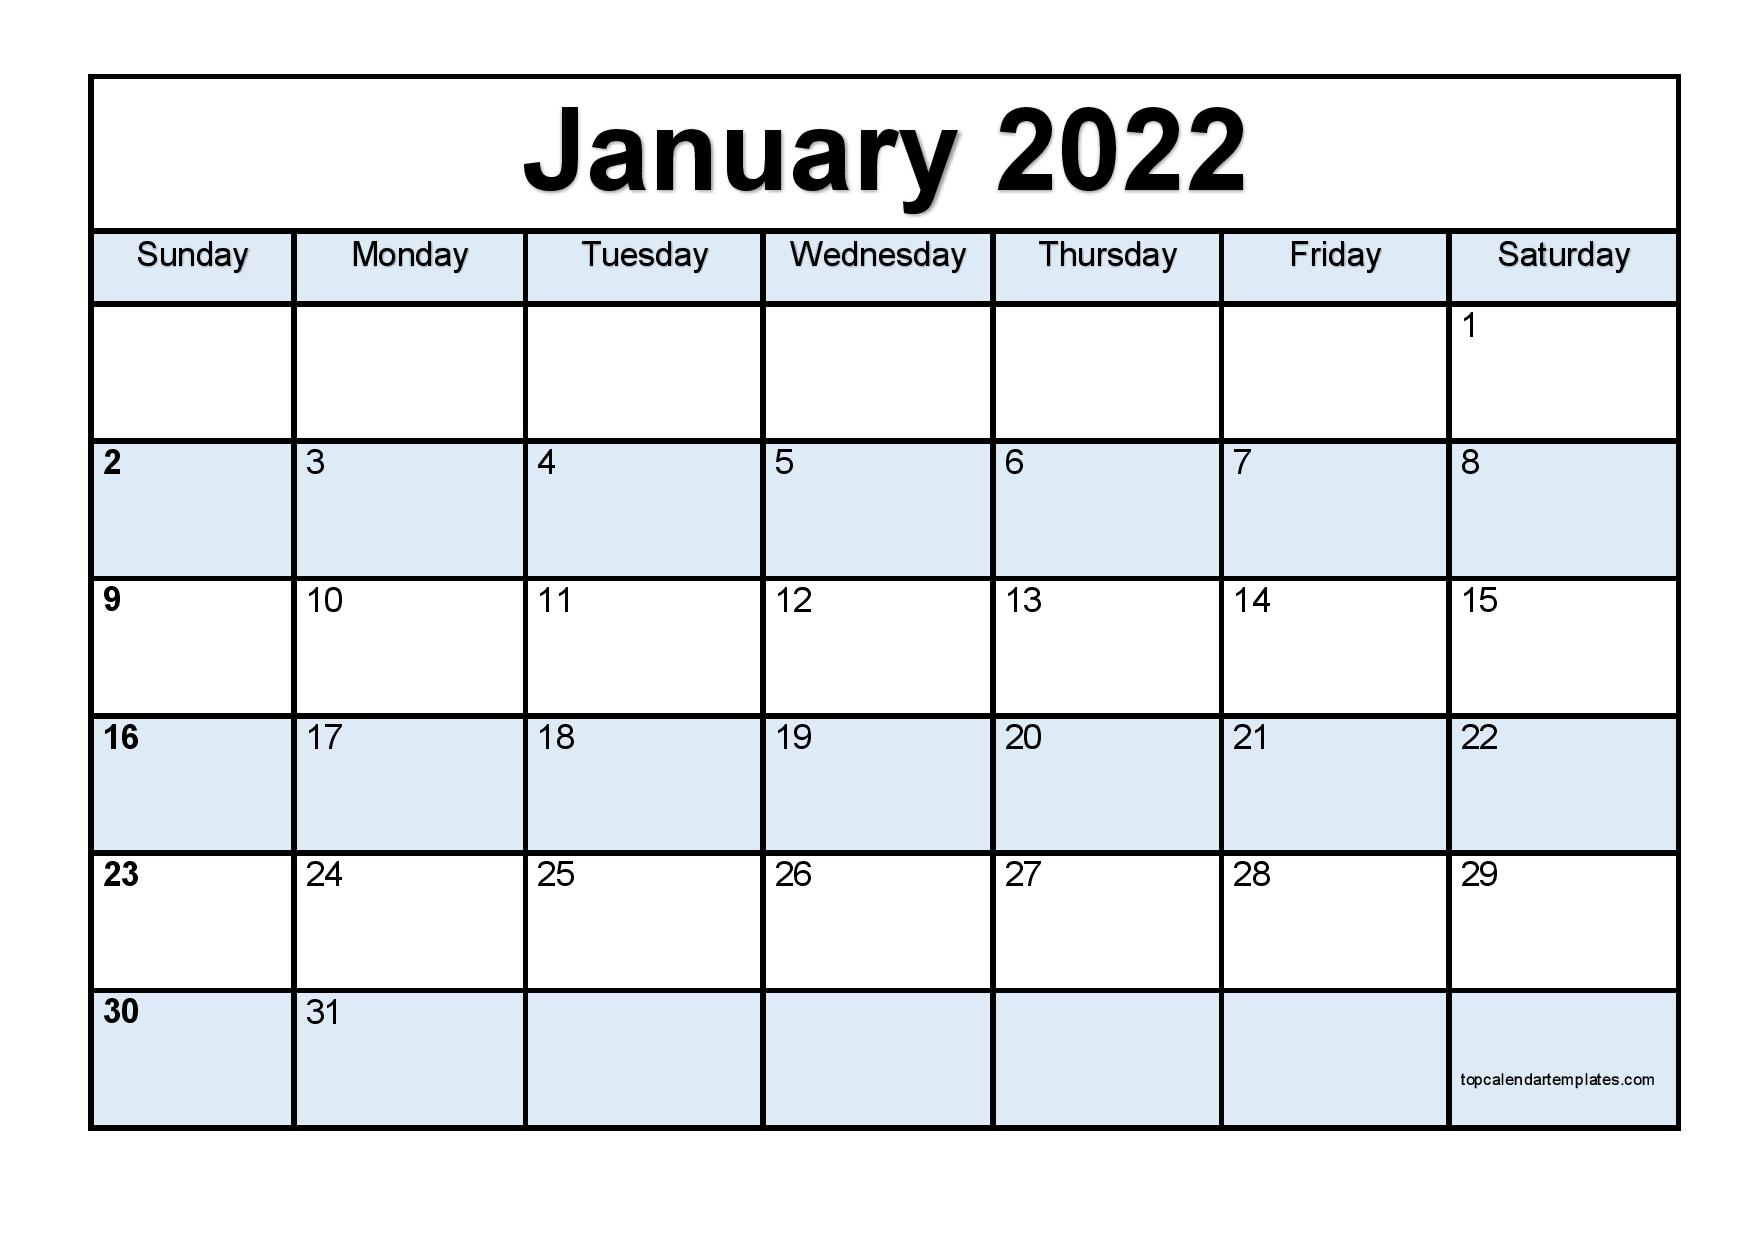 Catch January 2022 Hijri Calendar